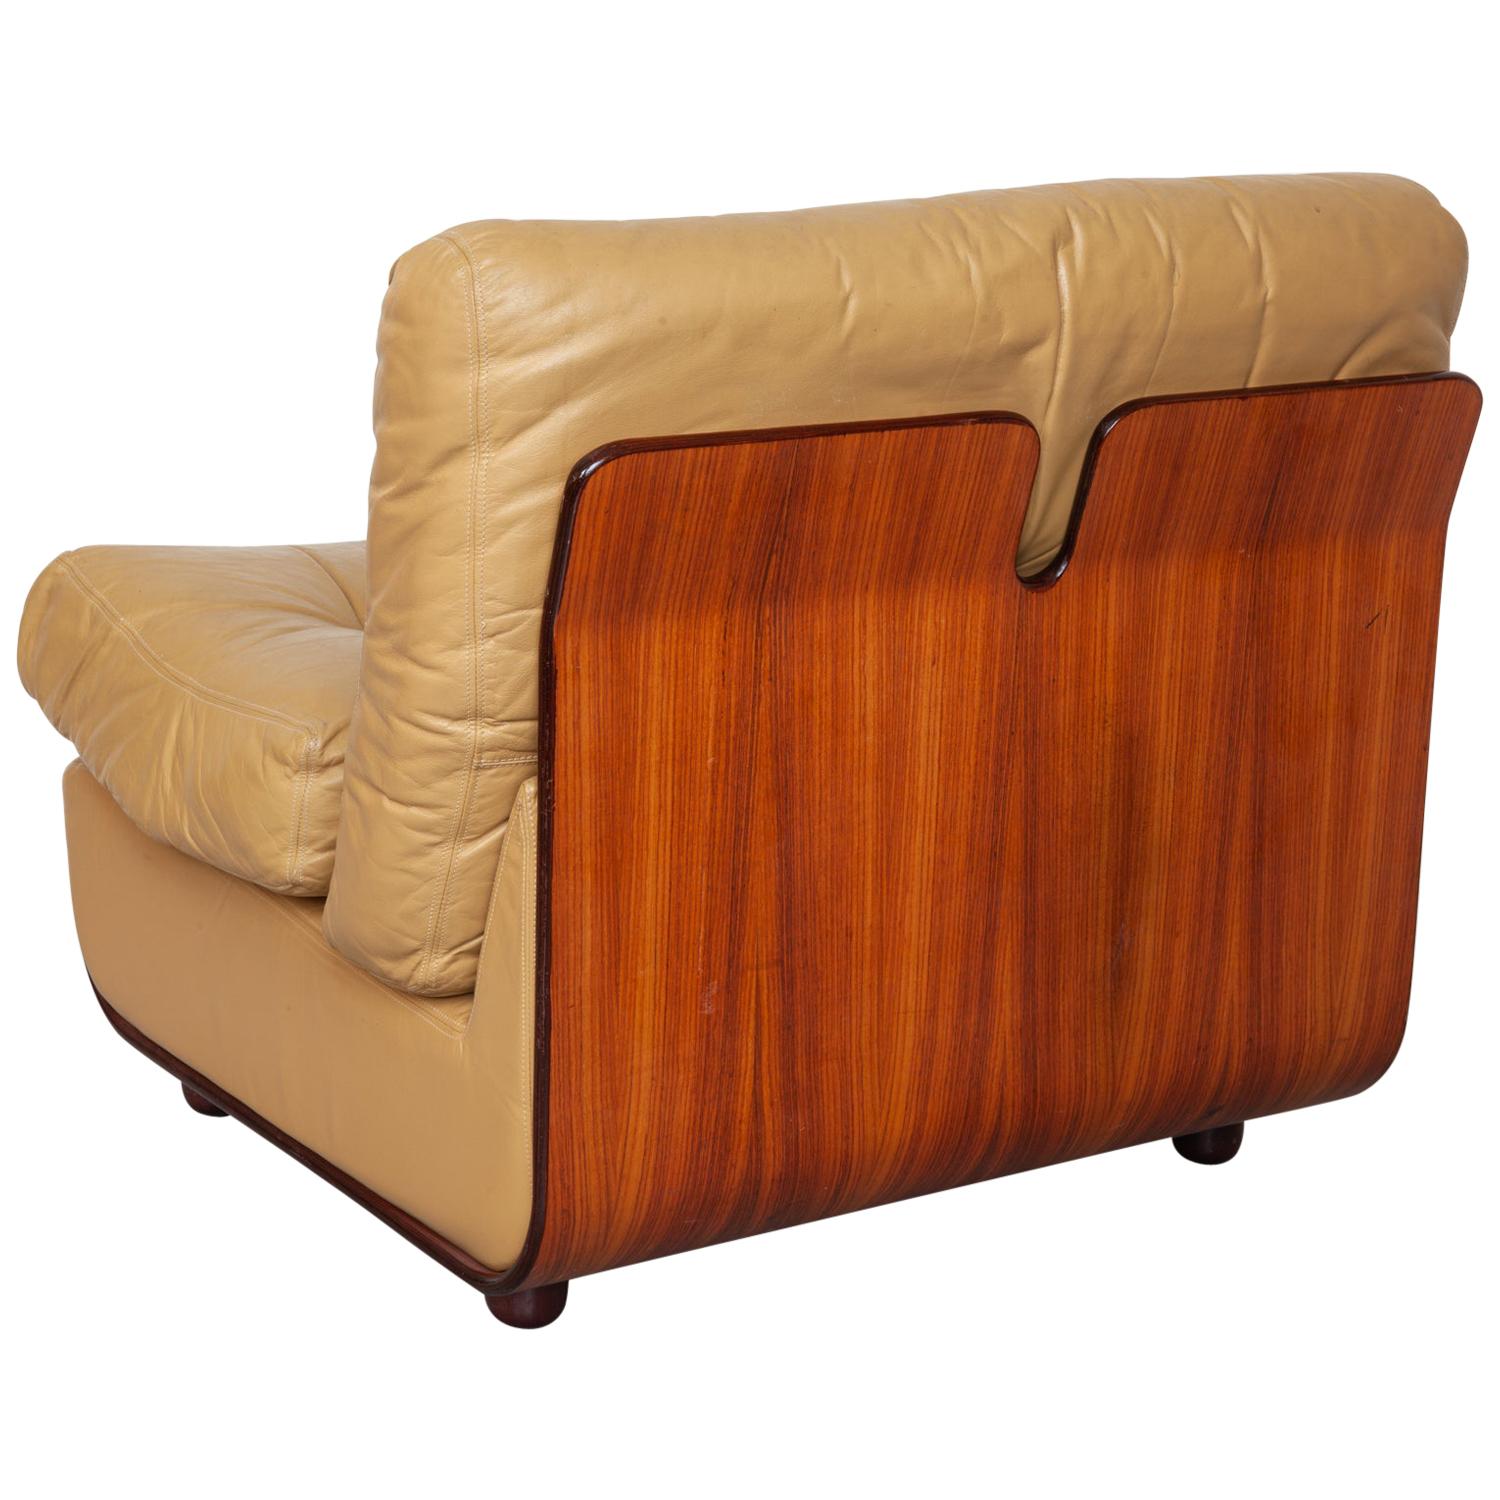 Italian 1960s Modular Lounge Chairs in Style of Geatano Pesce/Mario Bellini